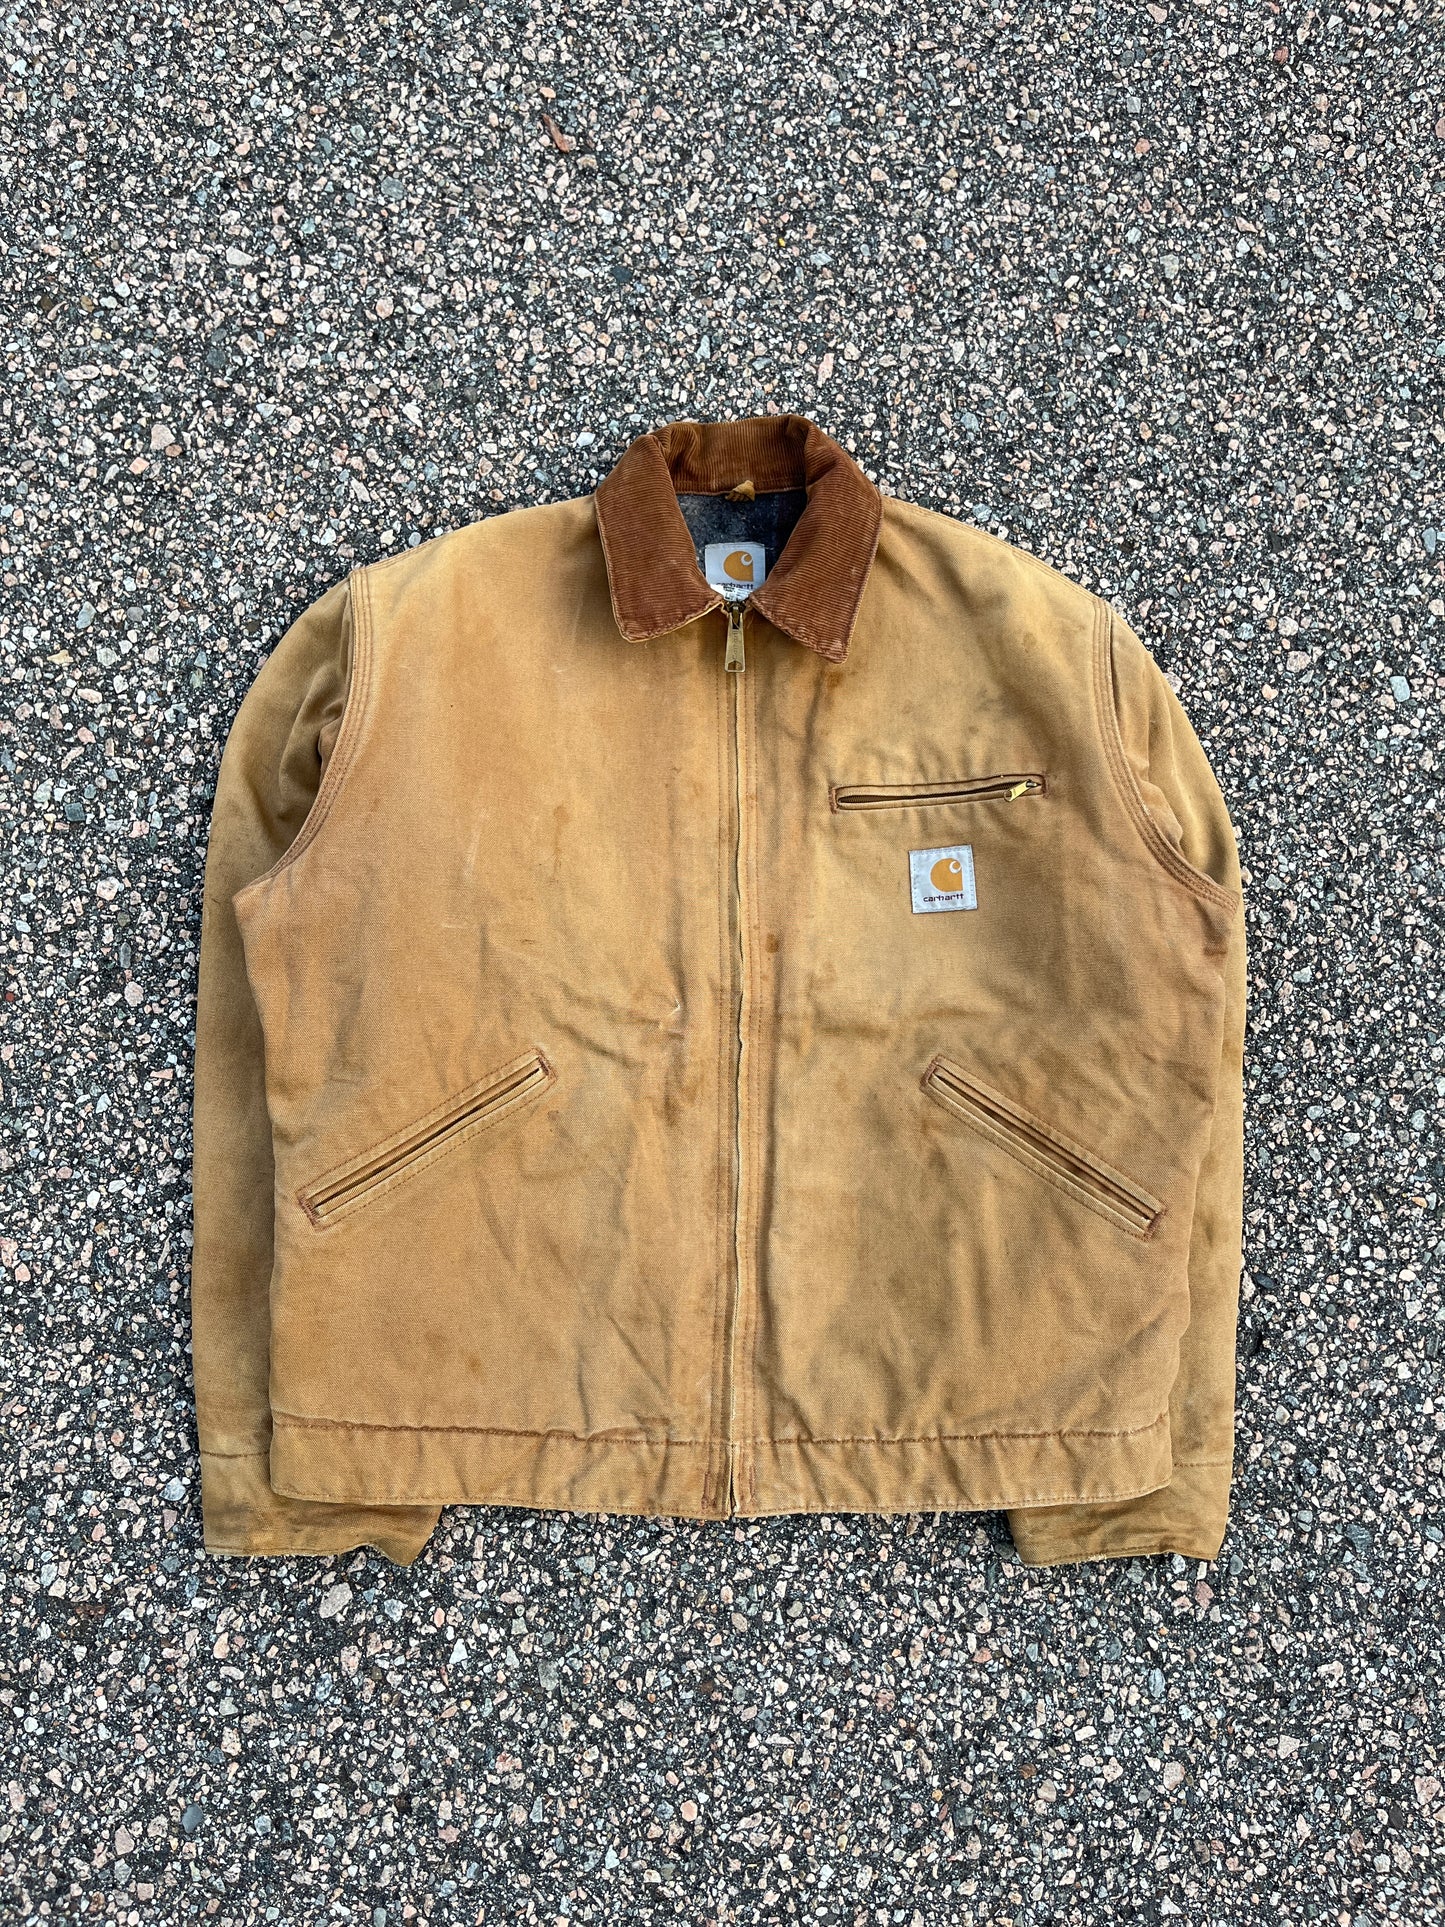 Faded Tan Carhartt Detroit Jacket - Medium